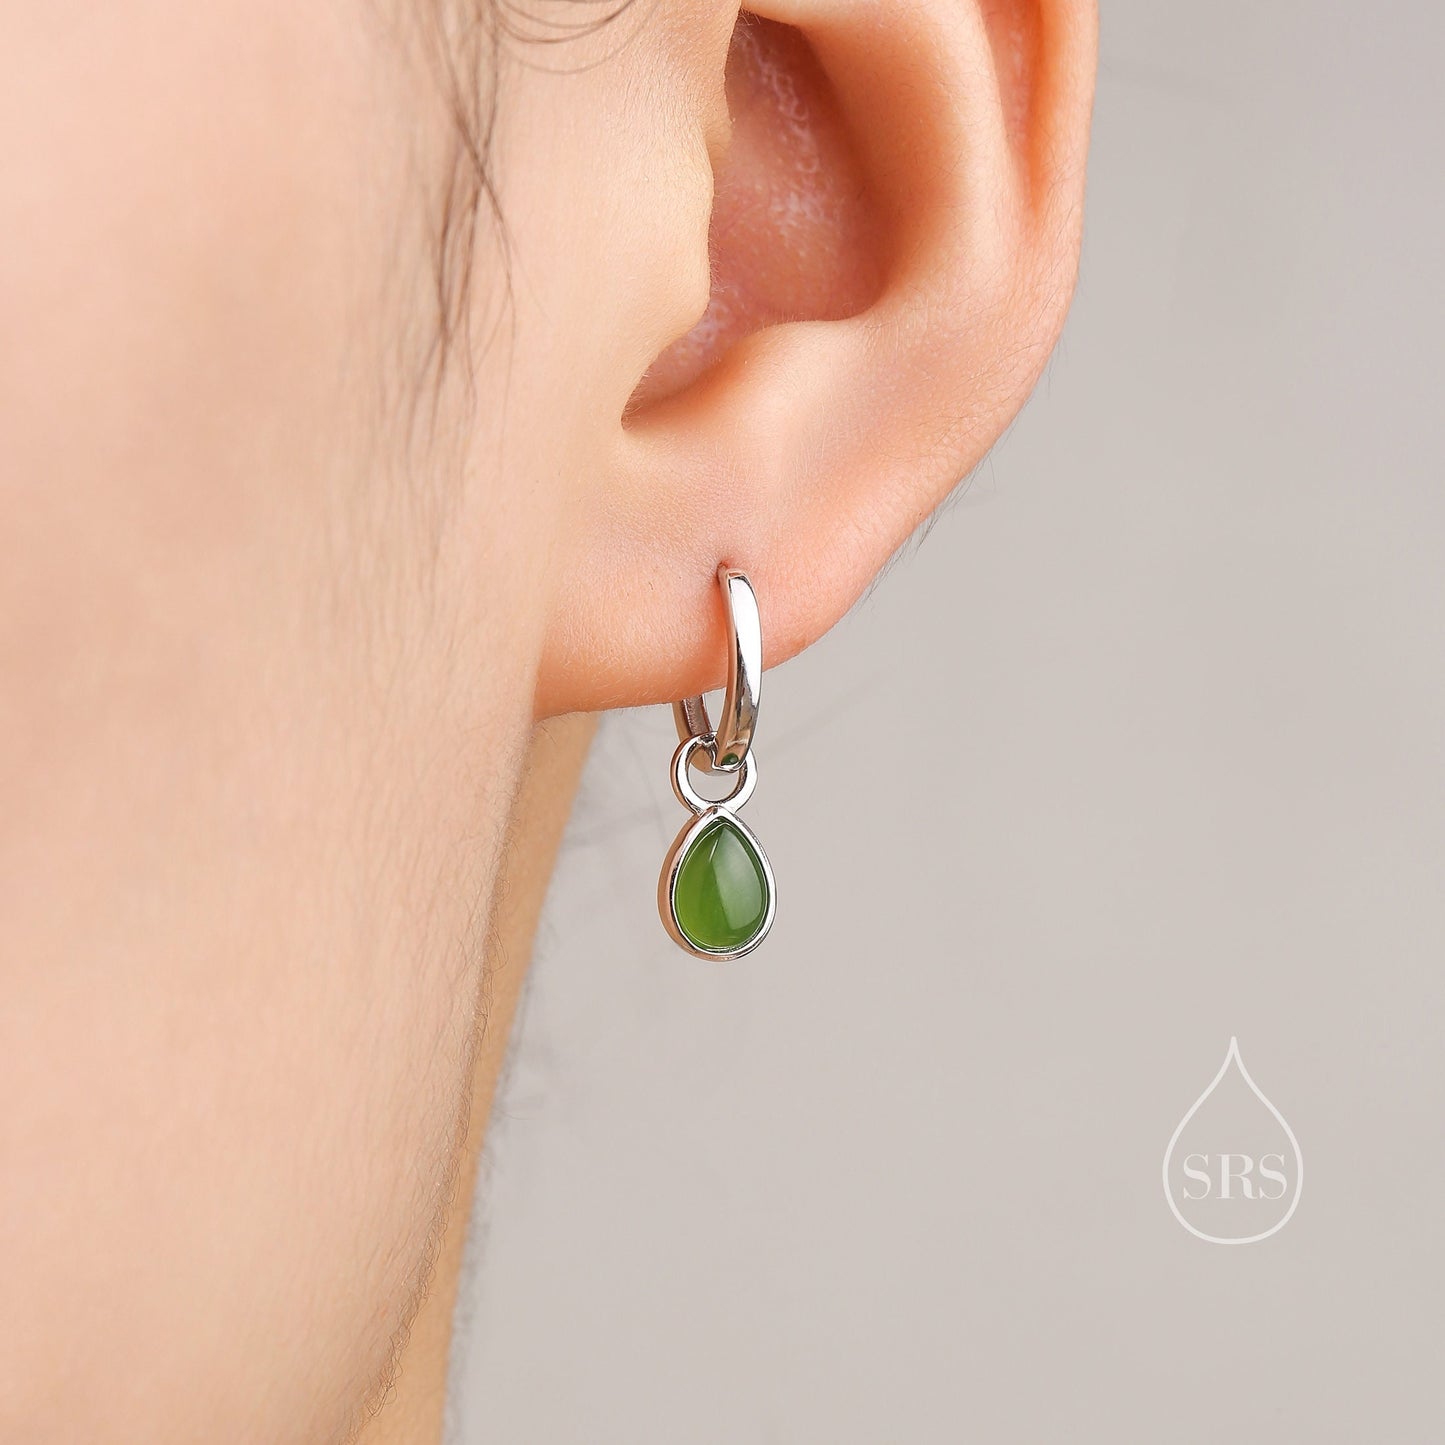 Sterling Silver Dangling Jade Droplet Hoop Earrings, Detachable Genuine Green Jade Charm Dangle Hoop Earrings, Silver or Gold,